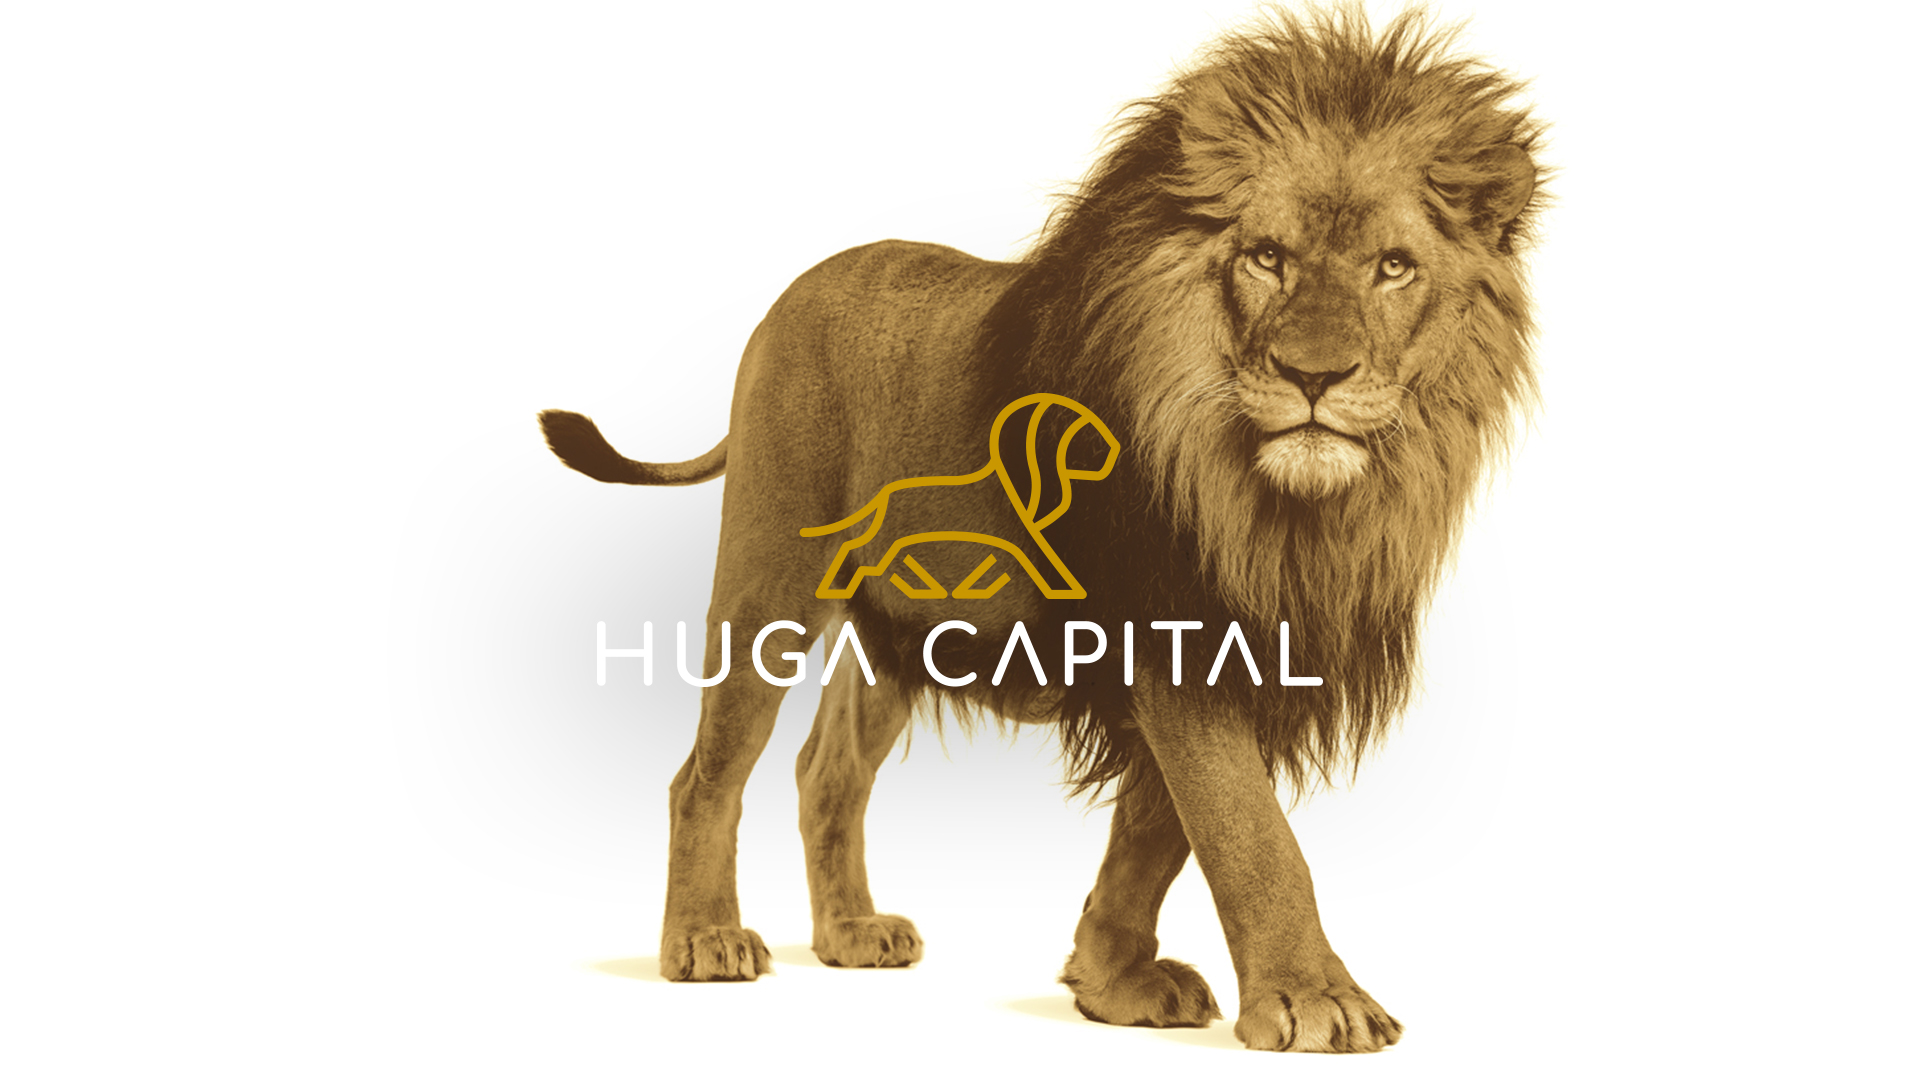 huga-capital-marketing-monterrey-kiwiids-1